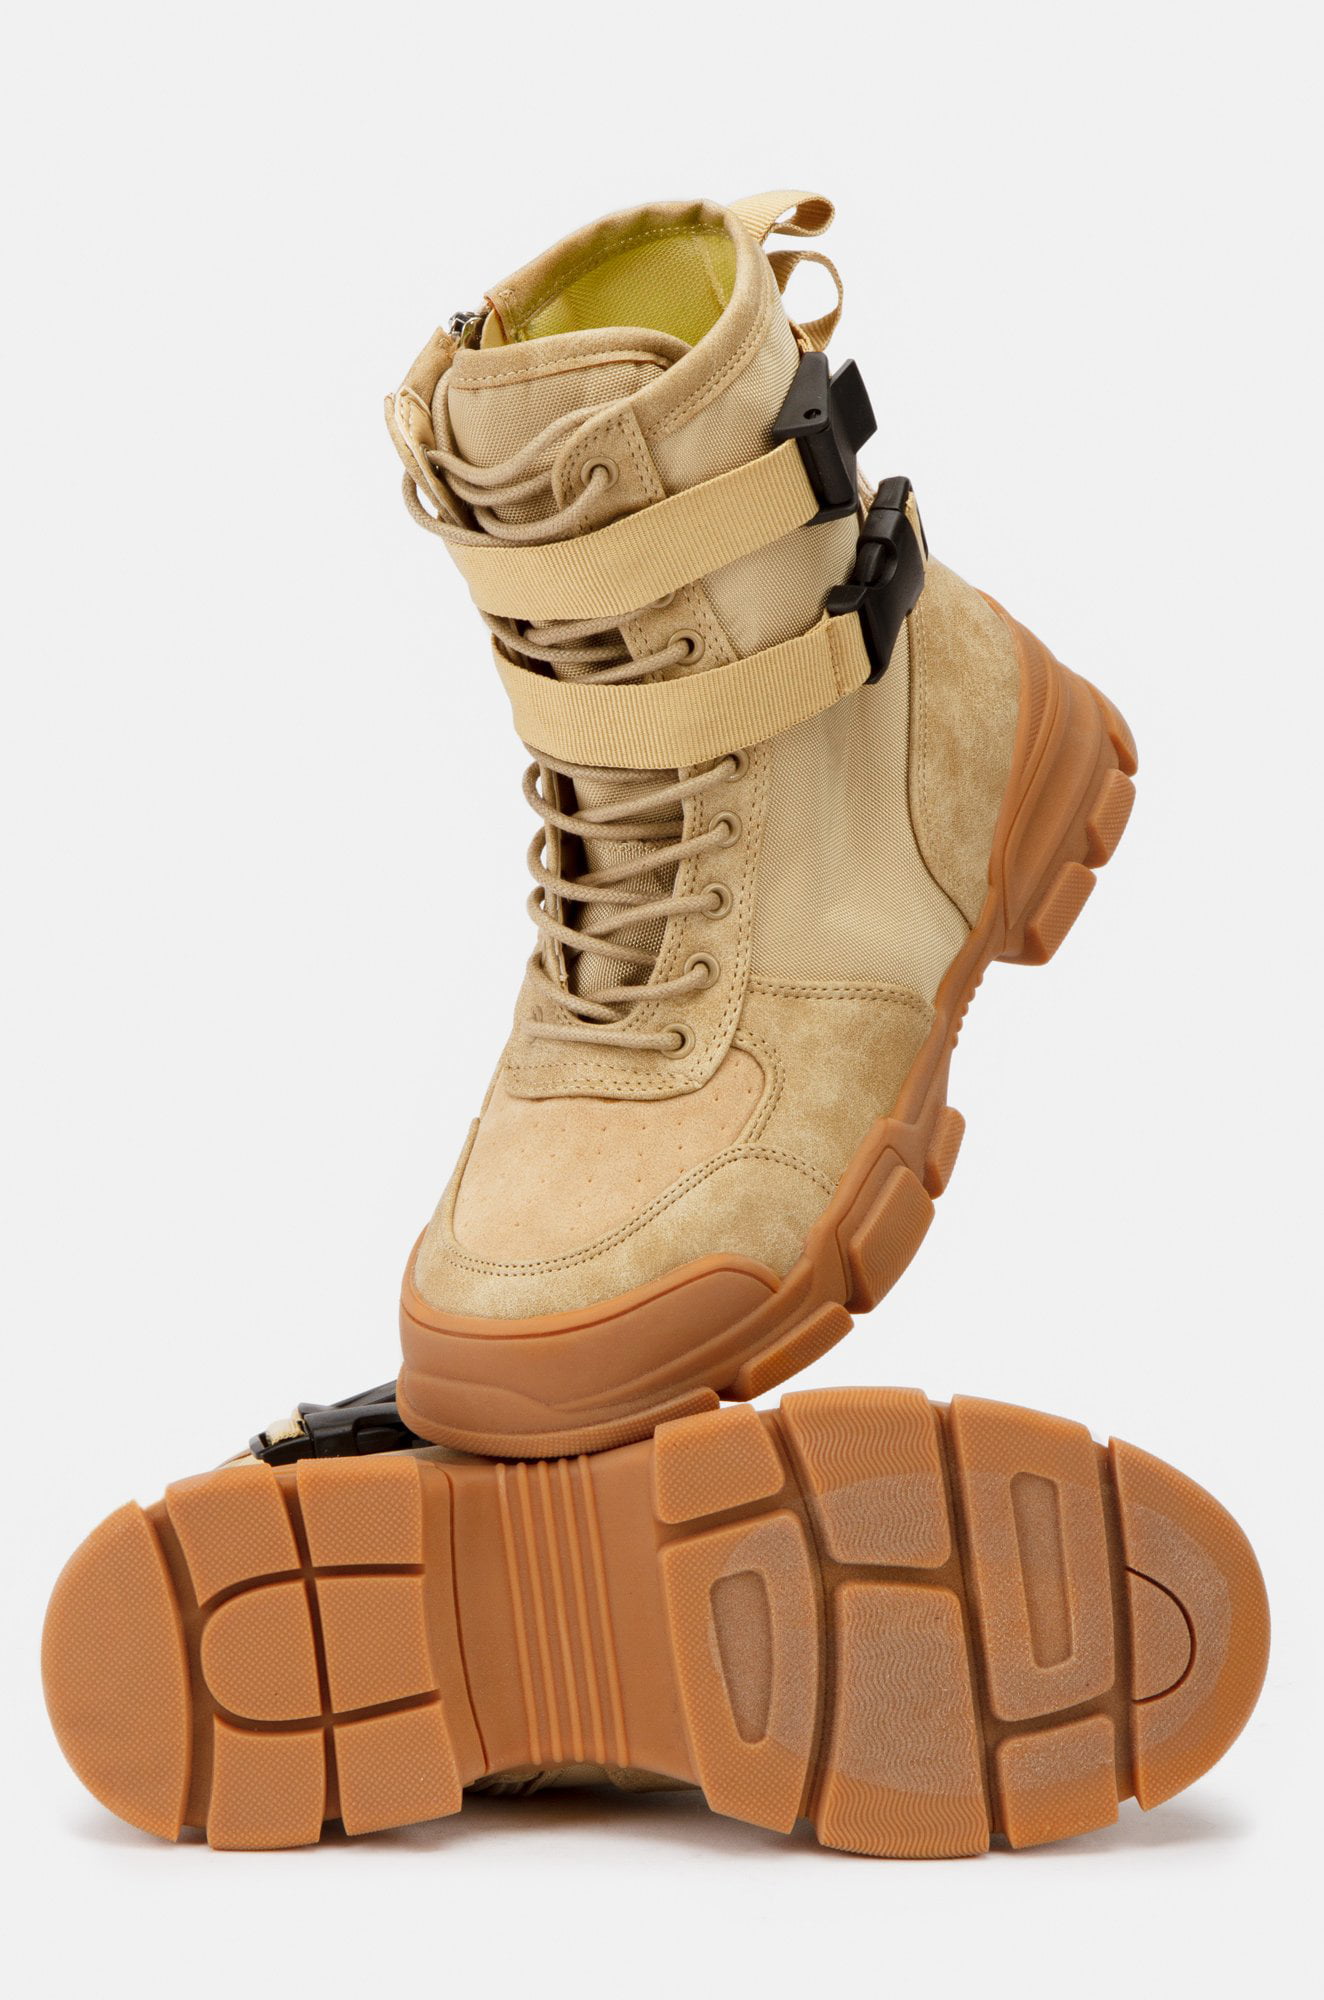 cape robbin sneaker boot